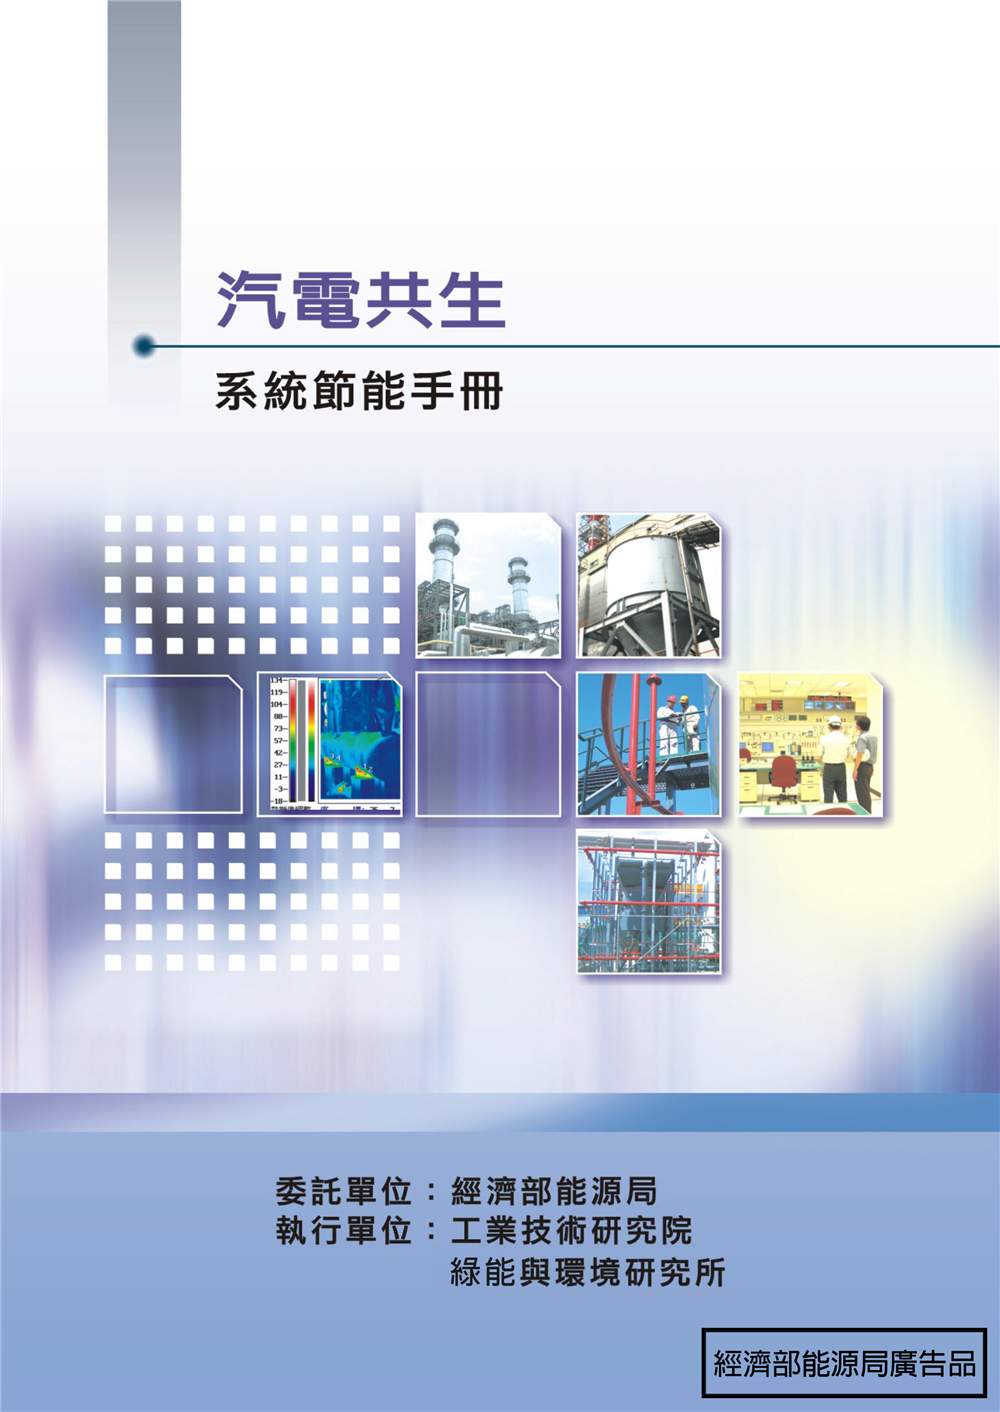 能源查核與節約能源案例手冊-汽電共生系統 的封面圖